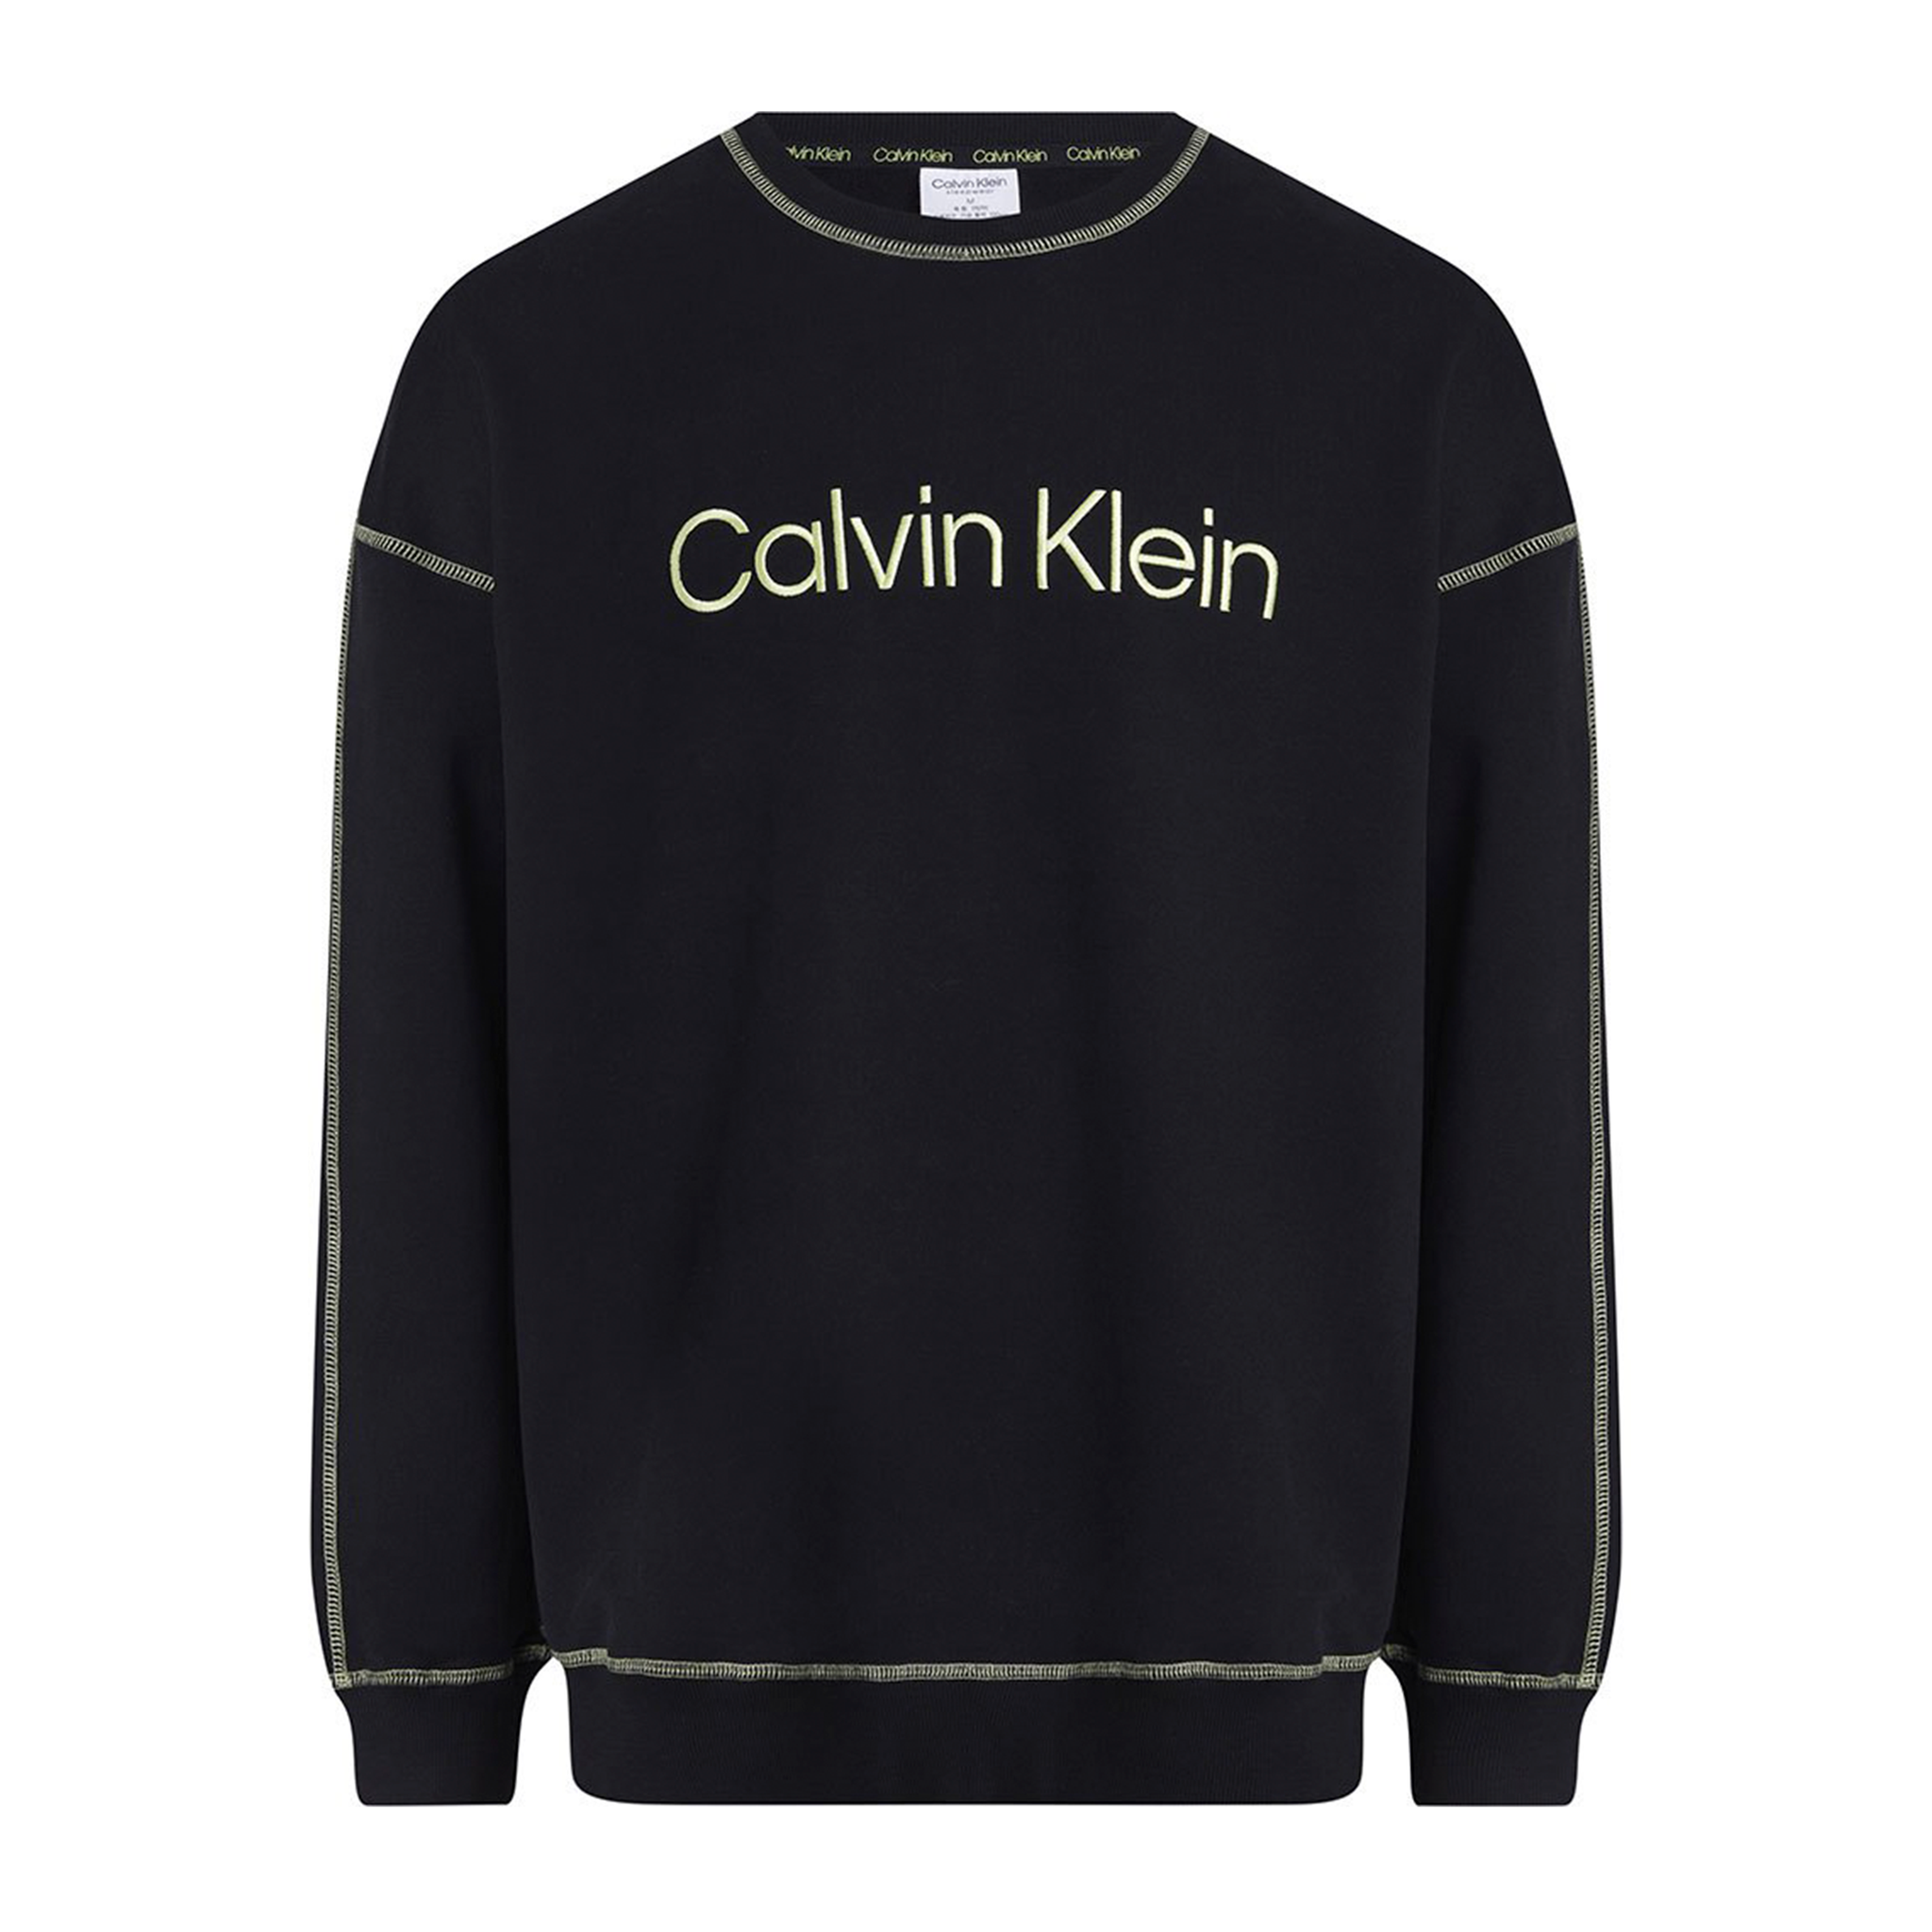 Fattal Beauty – Buy Calvin Klein Loungewear Set Long Sleeve Black